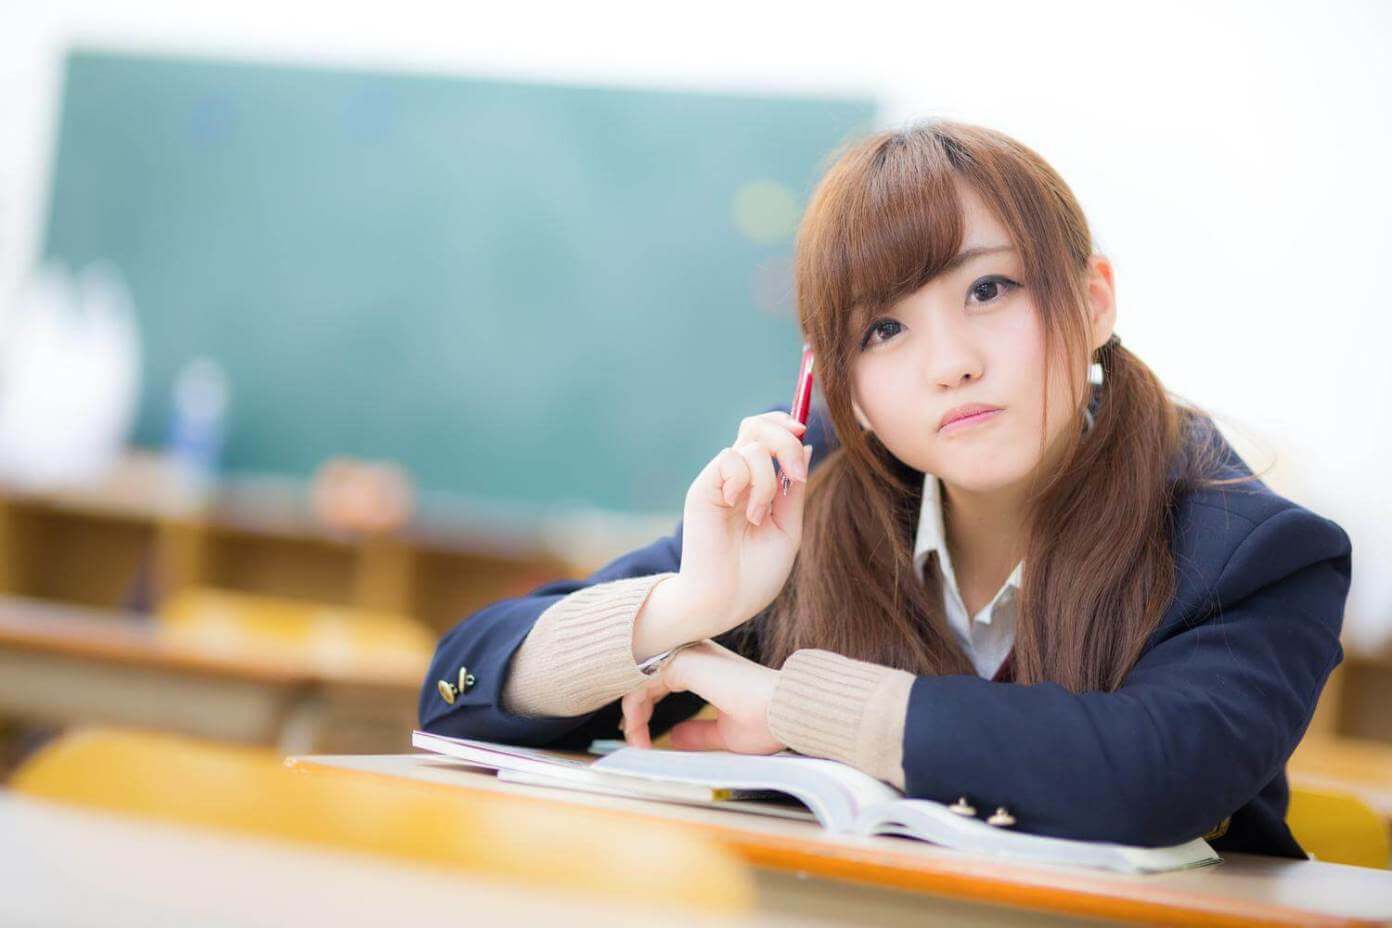 Японская студентка